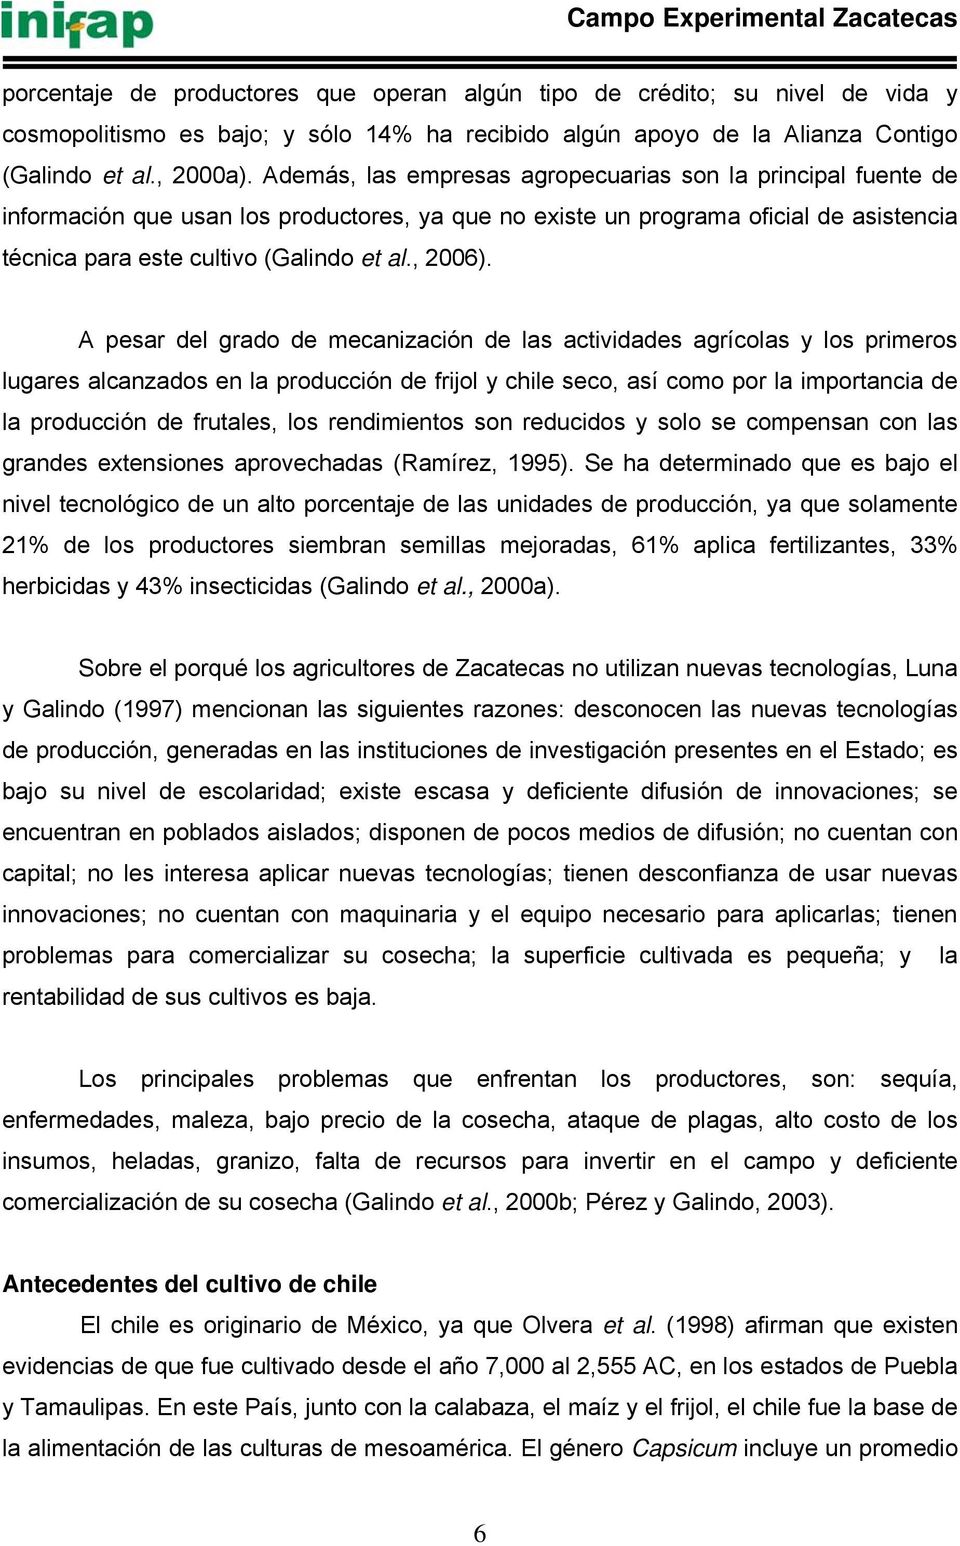 Además, las empresas agropecuarias son la principal fuente de información que usan los productores, ya que no existe un programa oficial de asistencia técnica para este cultivo (Galindo et al., 2006).